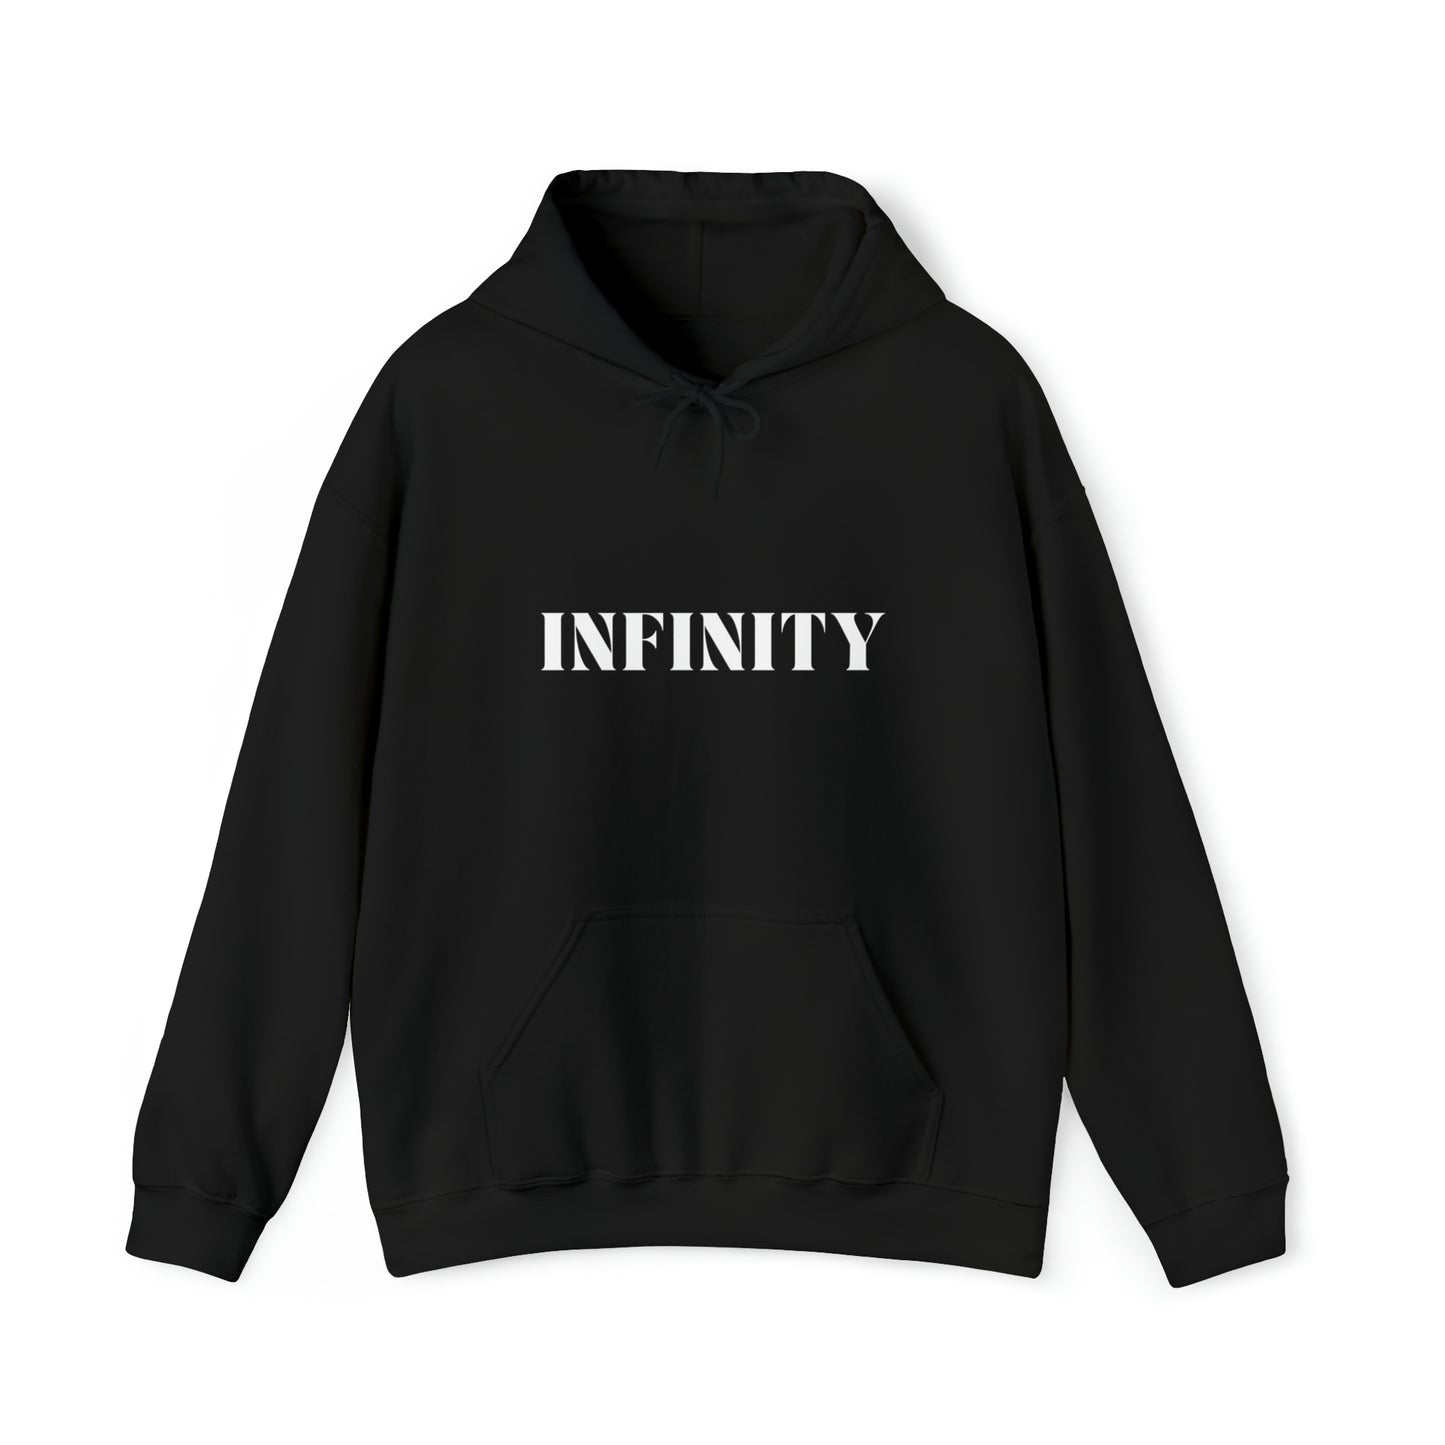 S Black Infinity Hoodie from HoodySZN.com